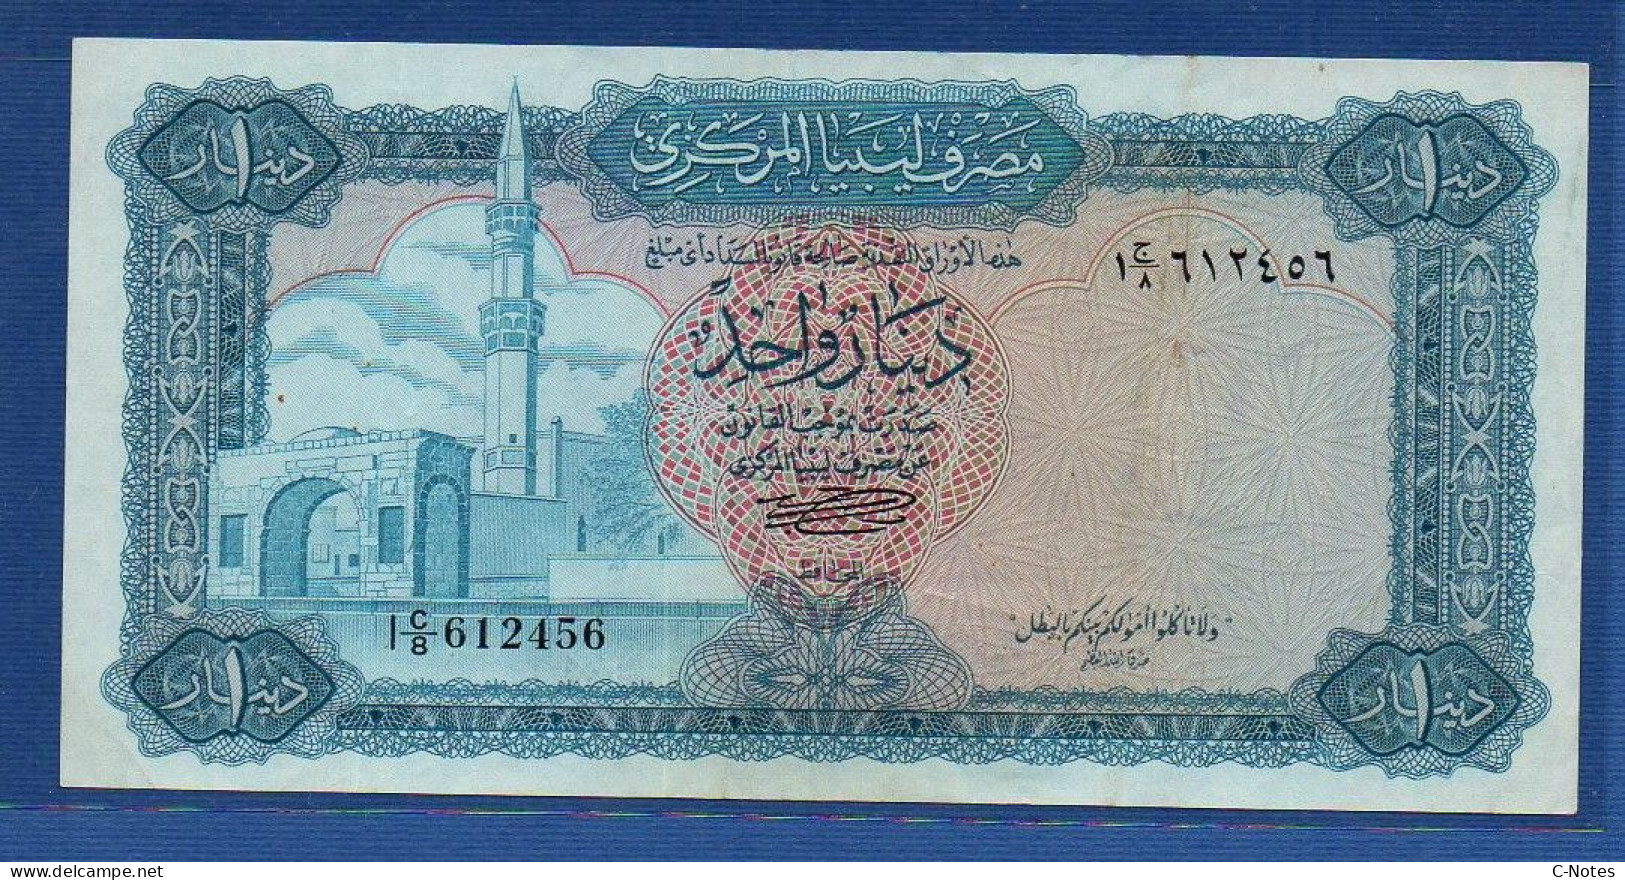 LIBYA - P.35b – 1 Pound 1972 AVF, S/n I C/8 612456 - Libyen